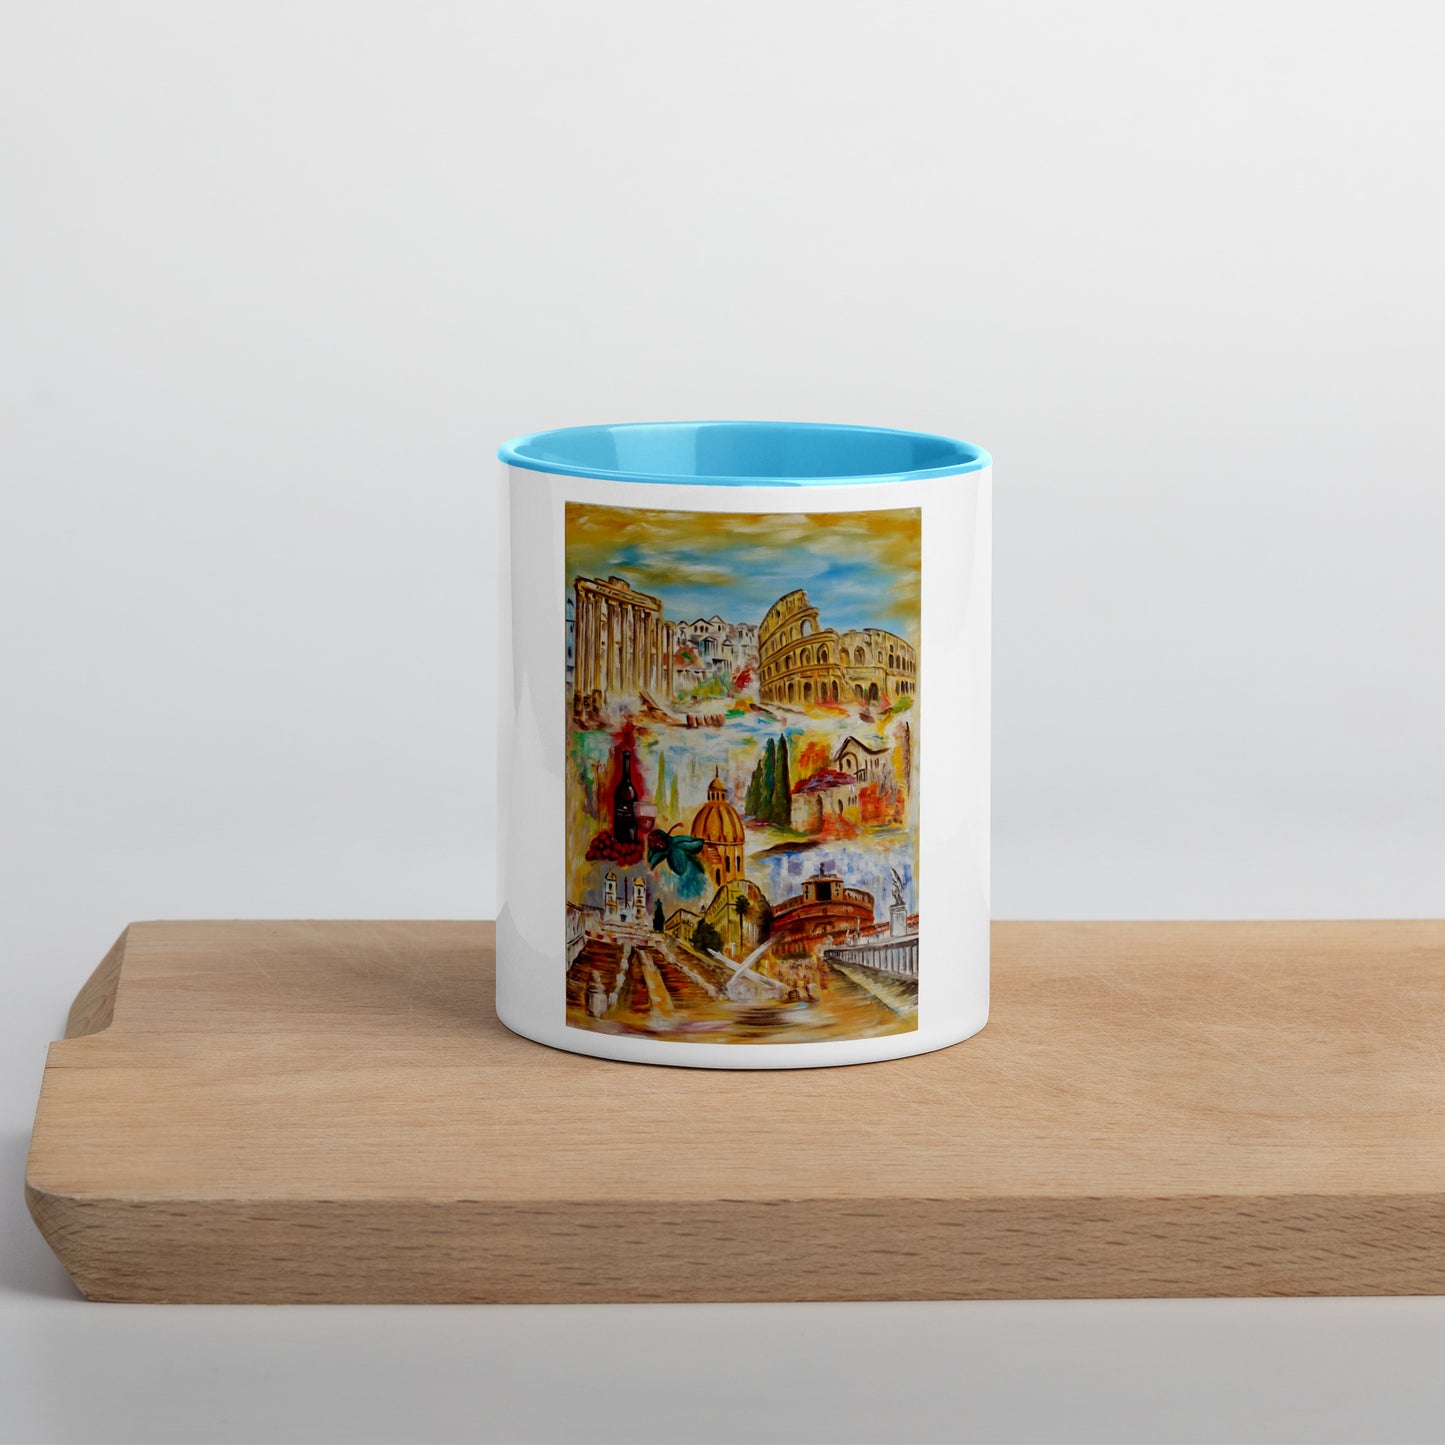 Colored interior mug "Rome Collage" Ceramic Art Original Gift